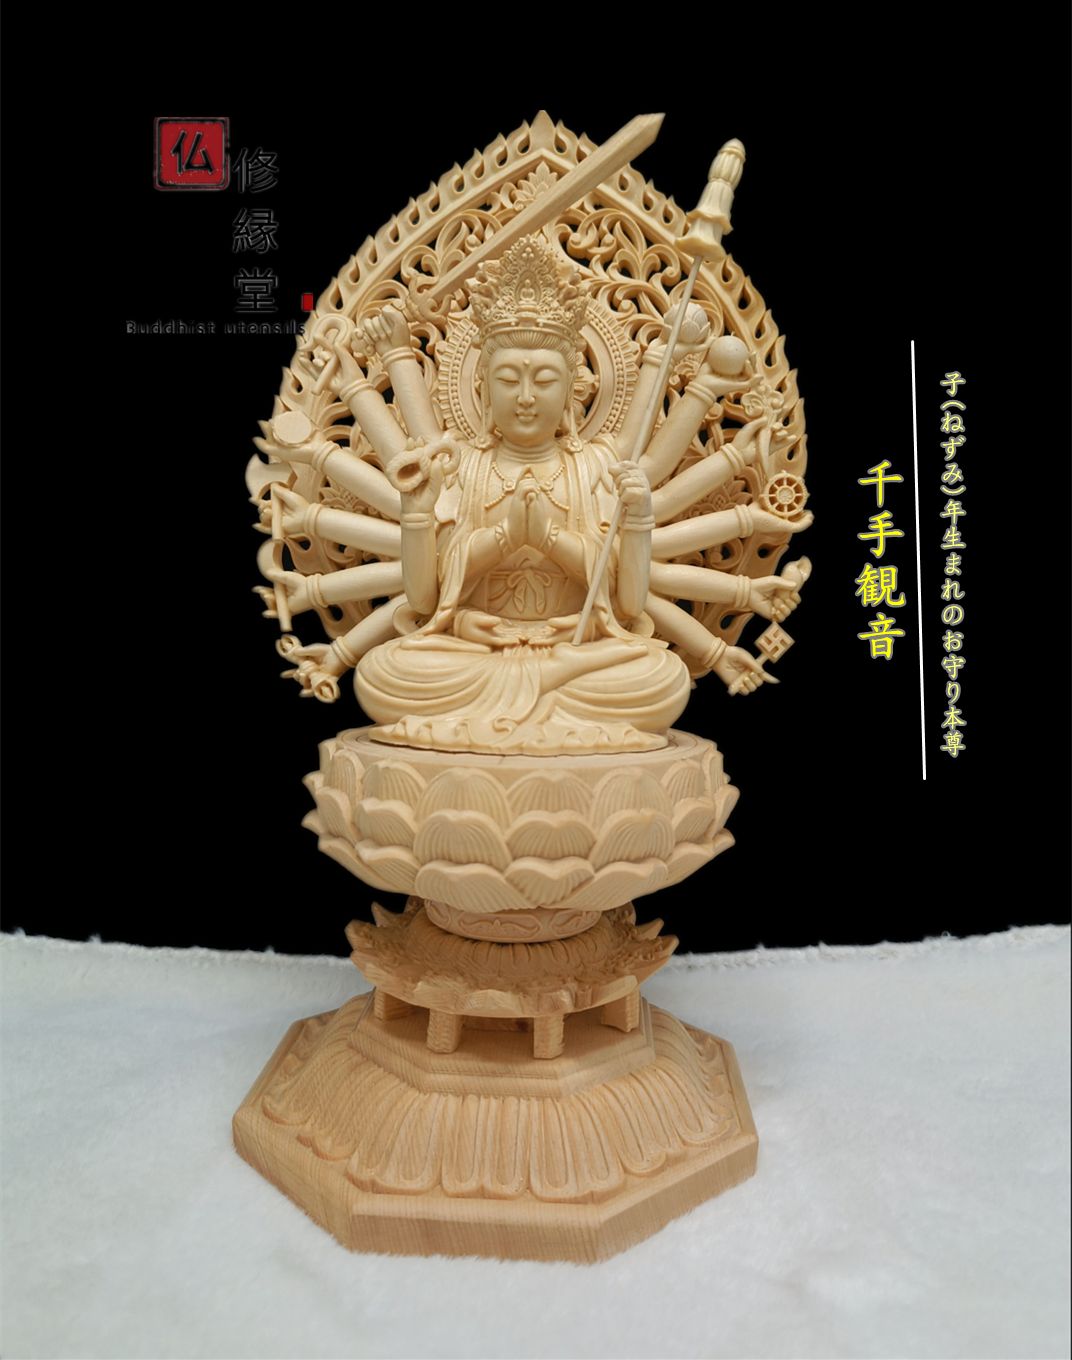 安い最新作最高級　総檜材　仏教工芸品　彩繪 本金 切金 木彫仏教　精密彫刻 仏師で仕上げ品 木彫仏像 五大明王像一式 仏像